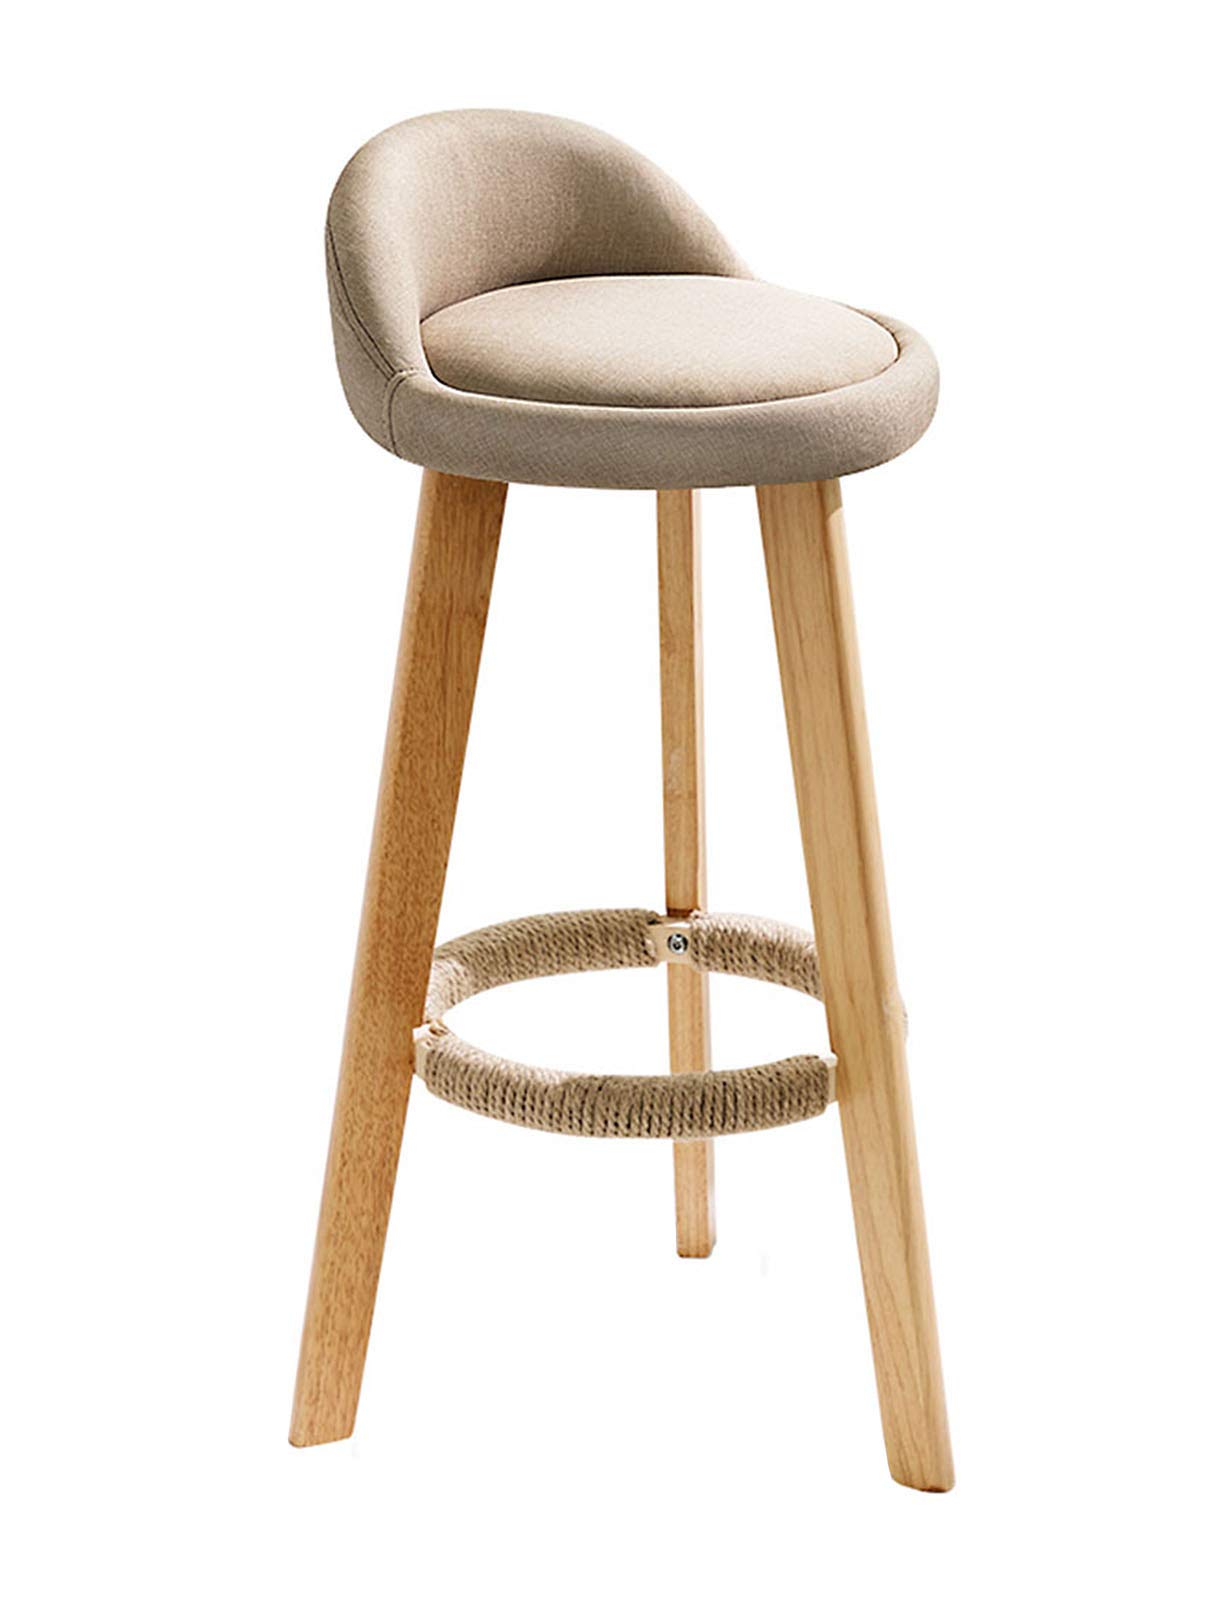 MYAOU Frühstücksbarhocker mit Rückenlehne, gepolsterte Stühle aus weichem Leinen mit Beinen aus massivem Holz und Fußstütze mit rundem Sitz Barhocker (grau/Creme)